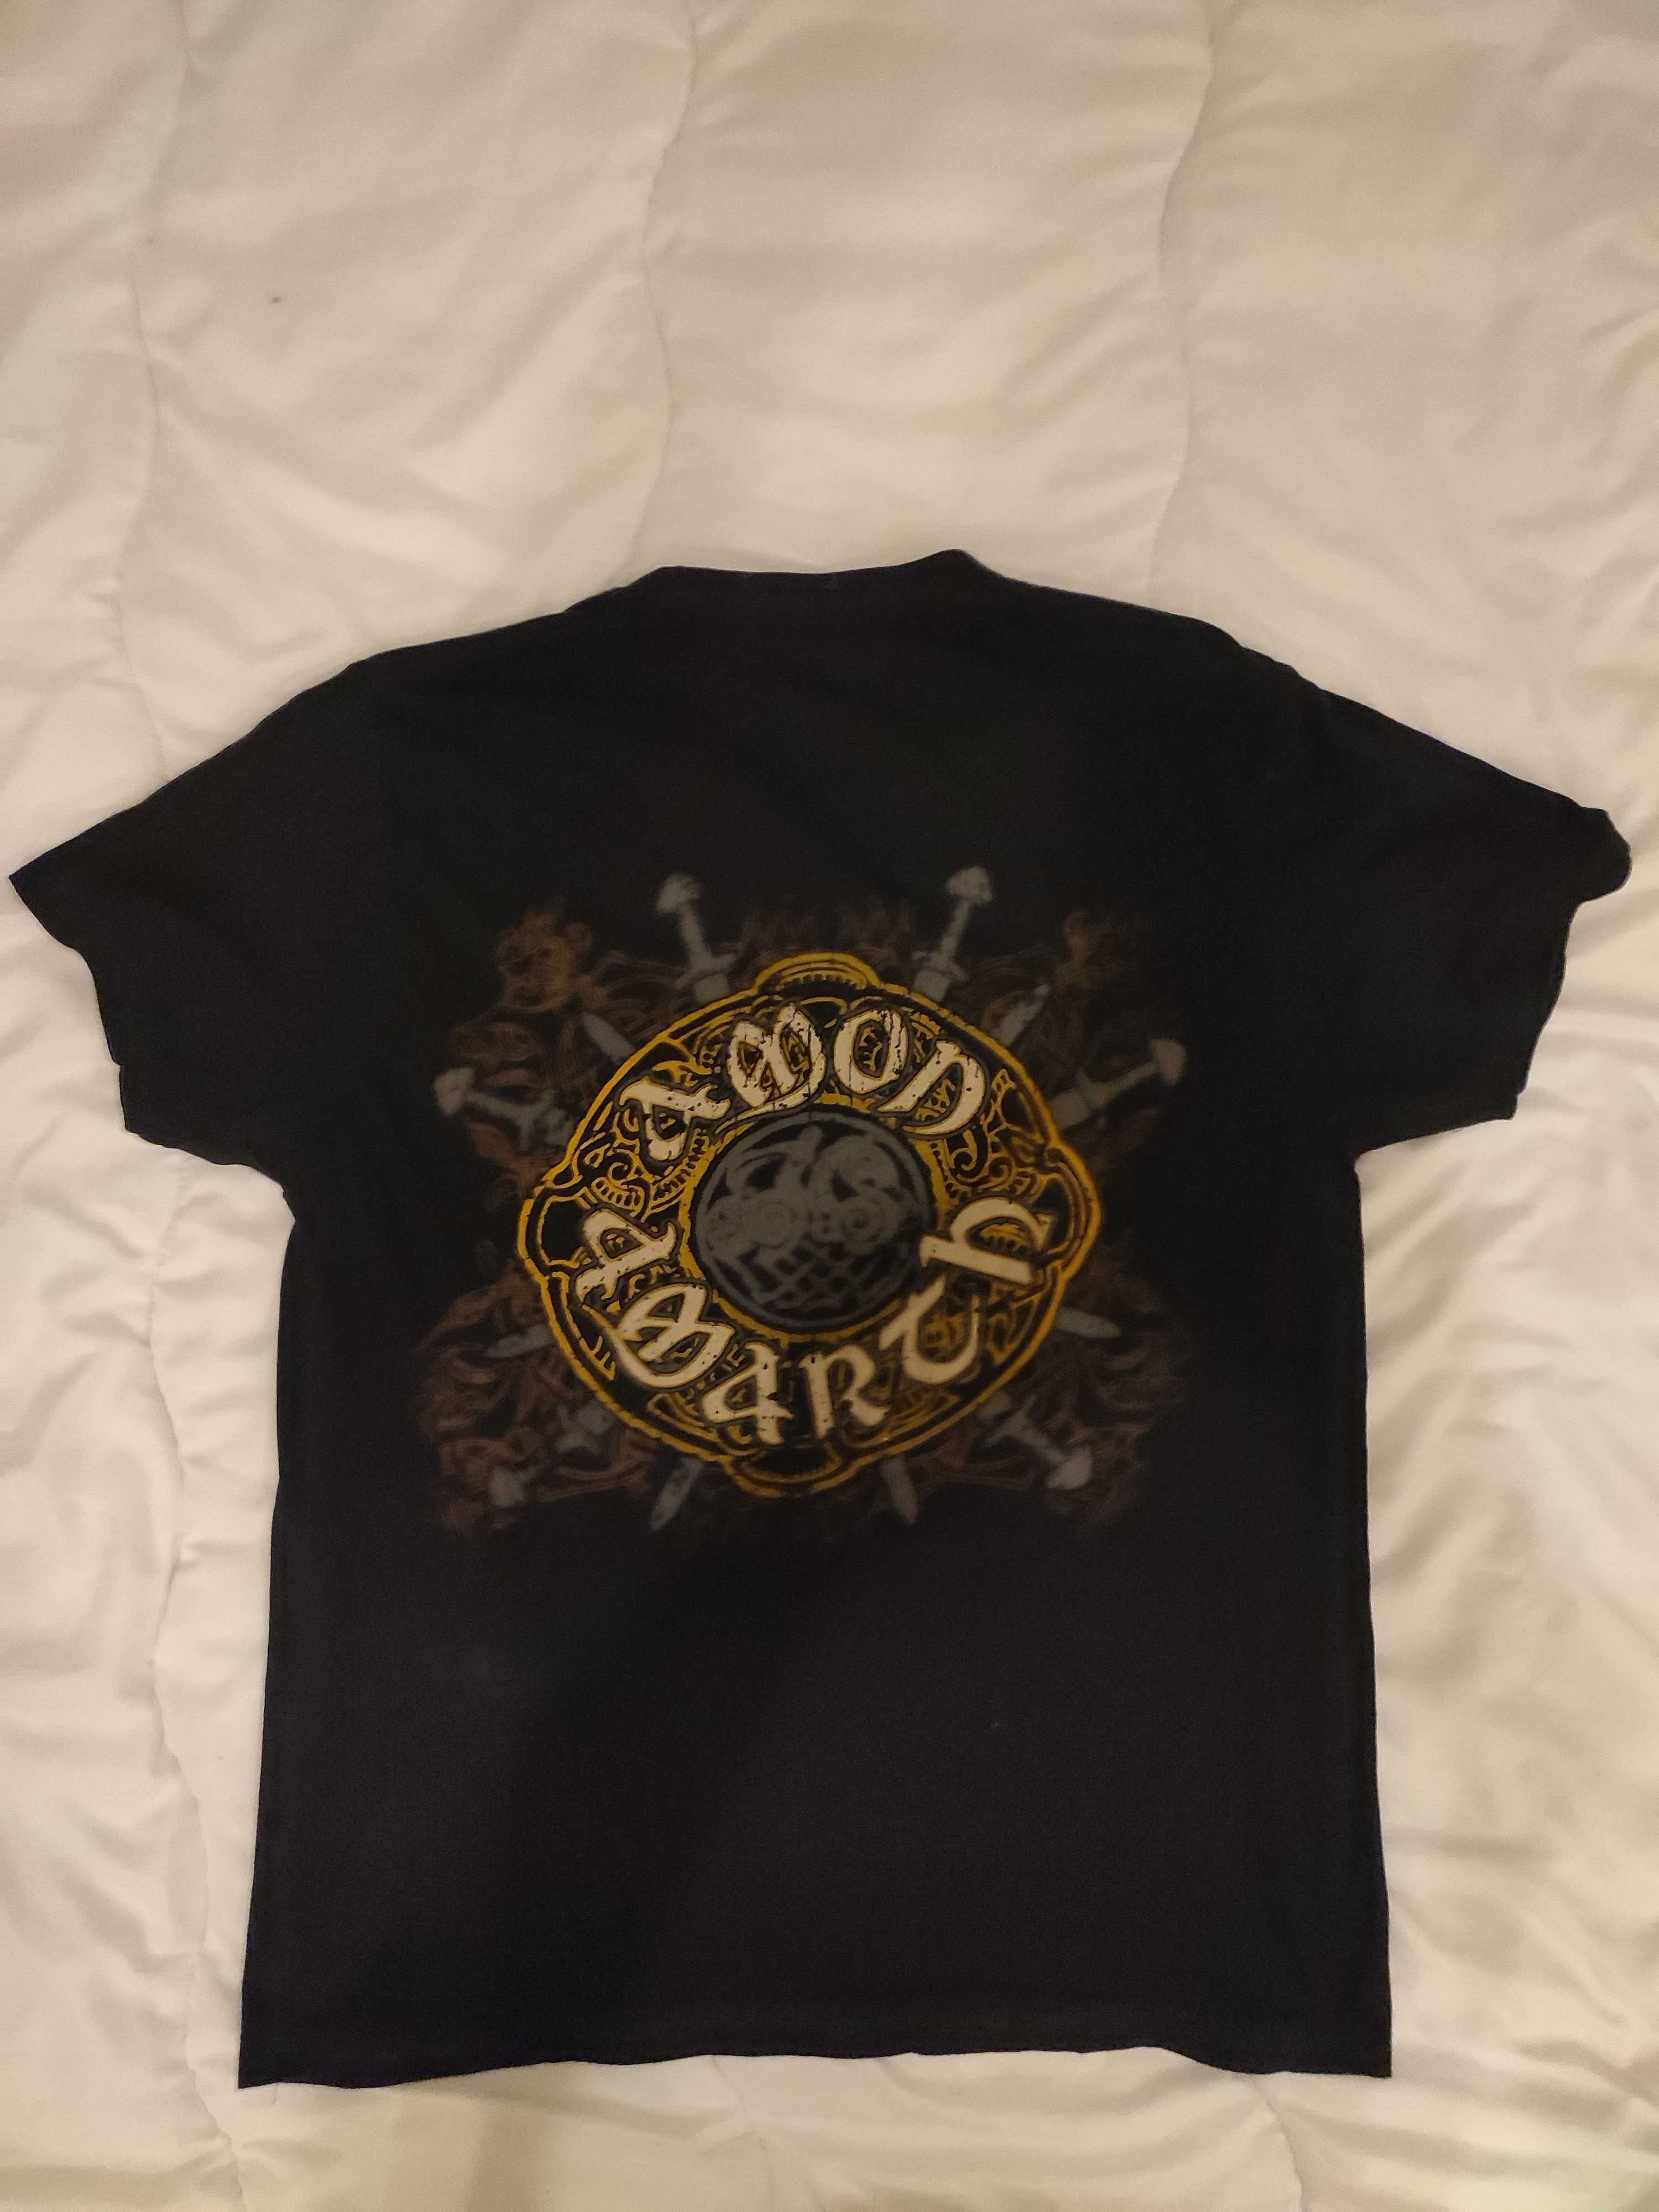 Метъл тенискa Metal t-shirt. Amon Amarth